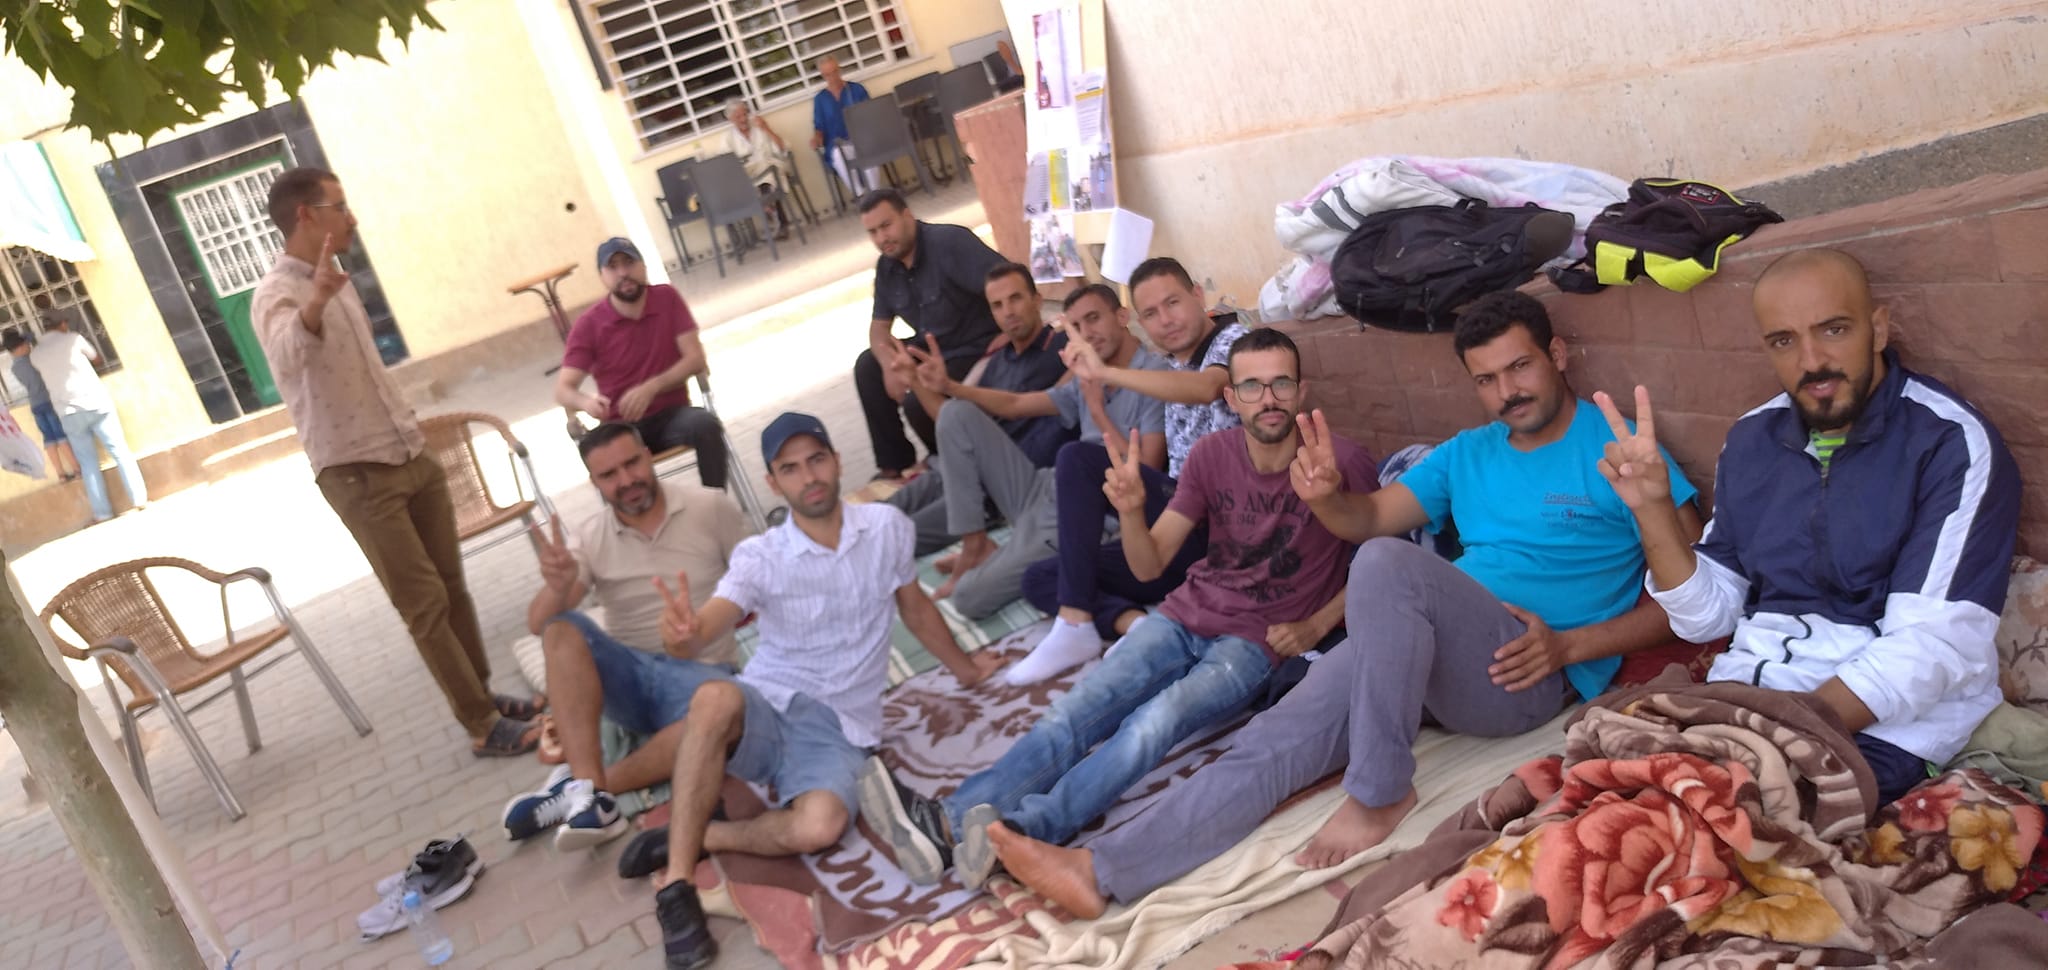  الجمعية تناشد الرفيق ياسين بوعملات من أجل وقف إضرابه عن الطعام "حياتك وصحتك تهماننا" 